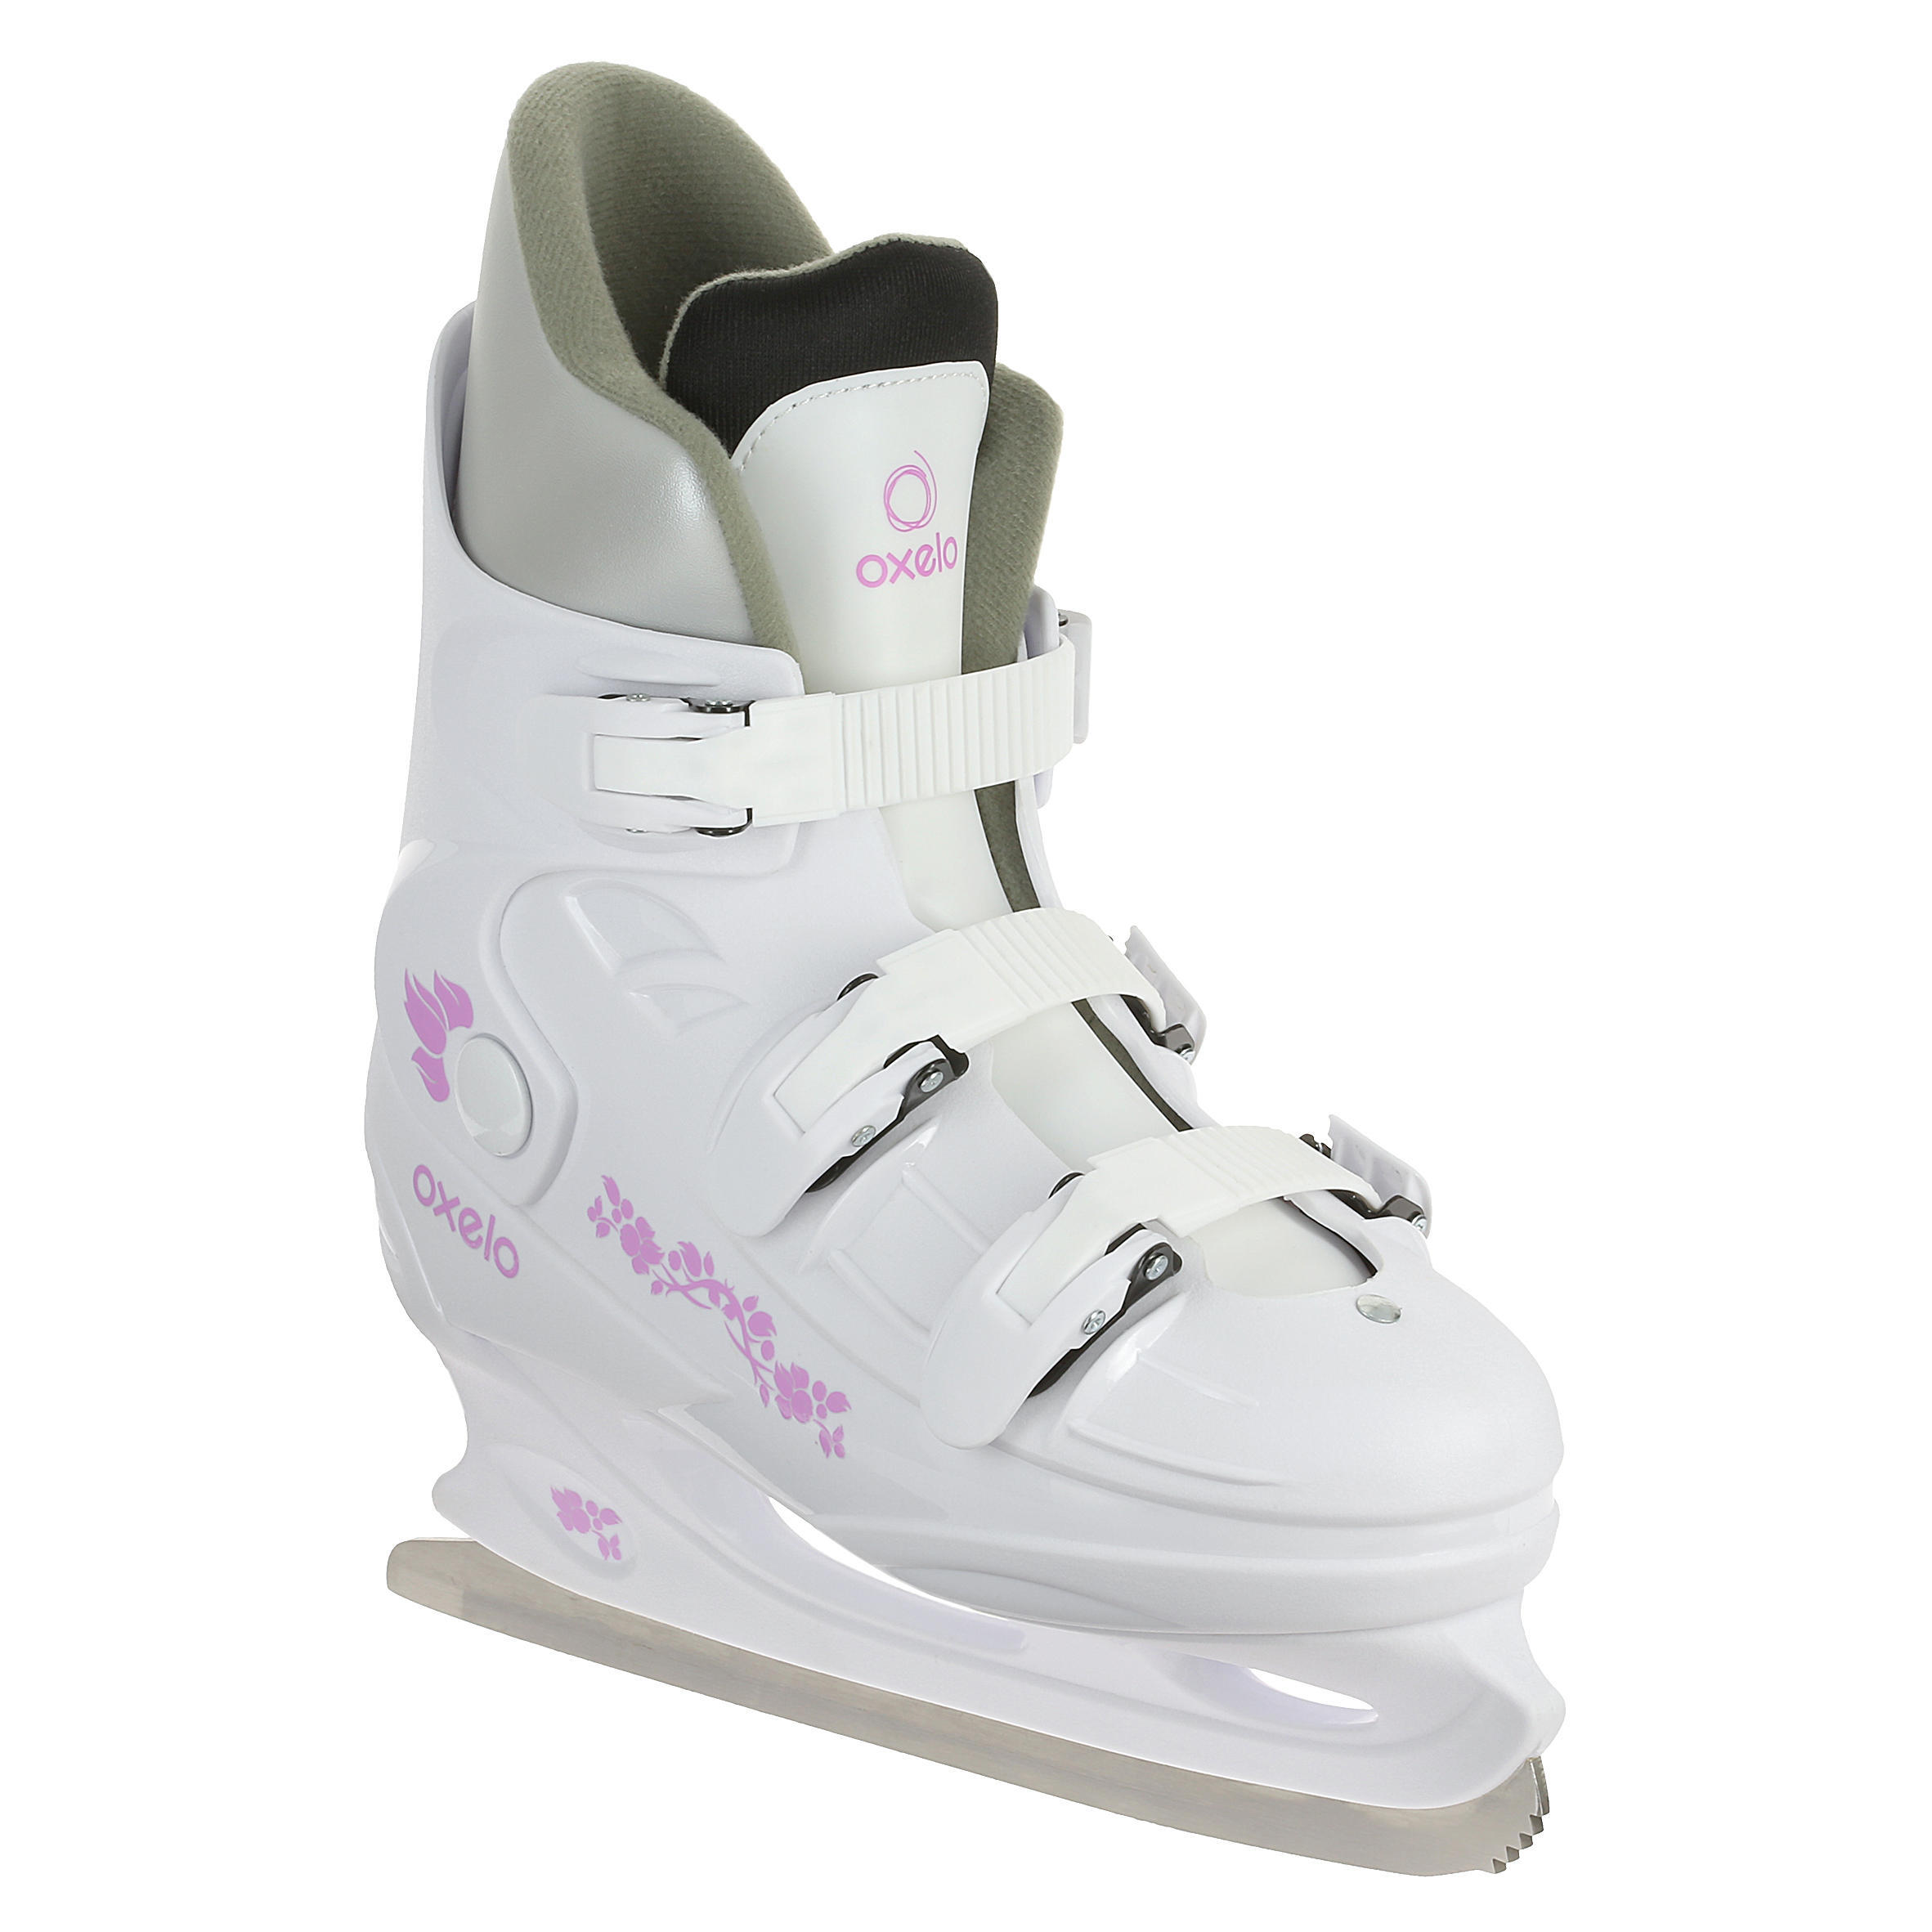 OXELO Fit1 Women's Ice Skates - White